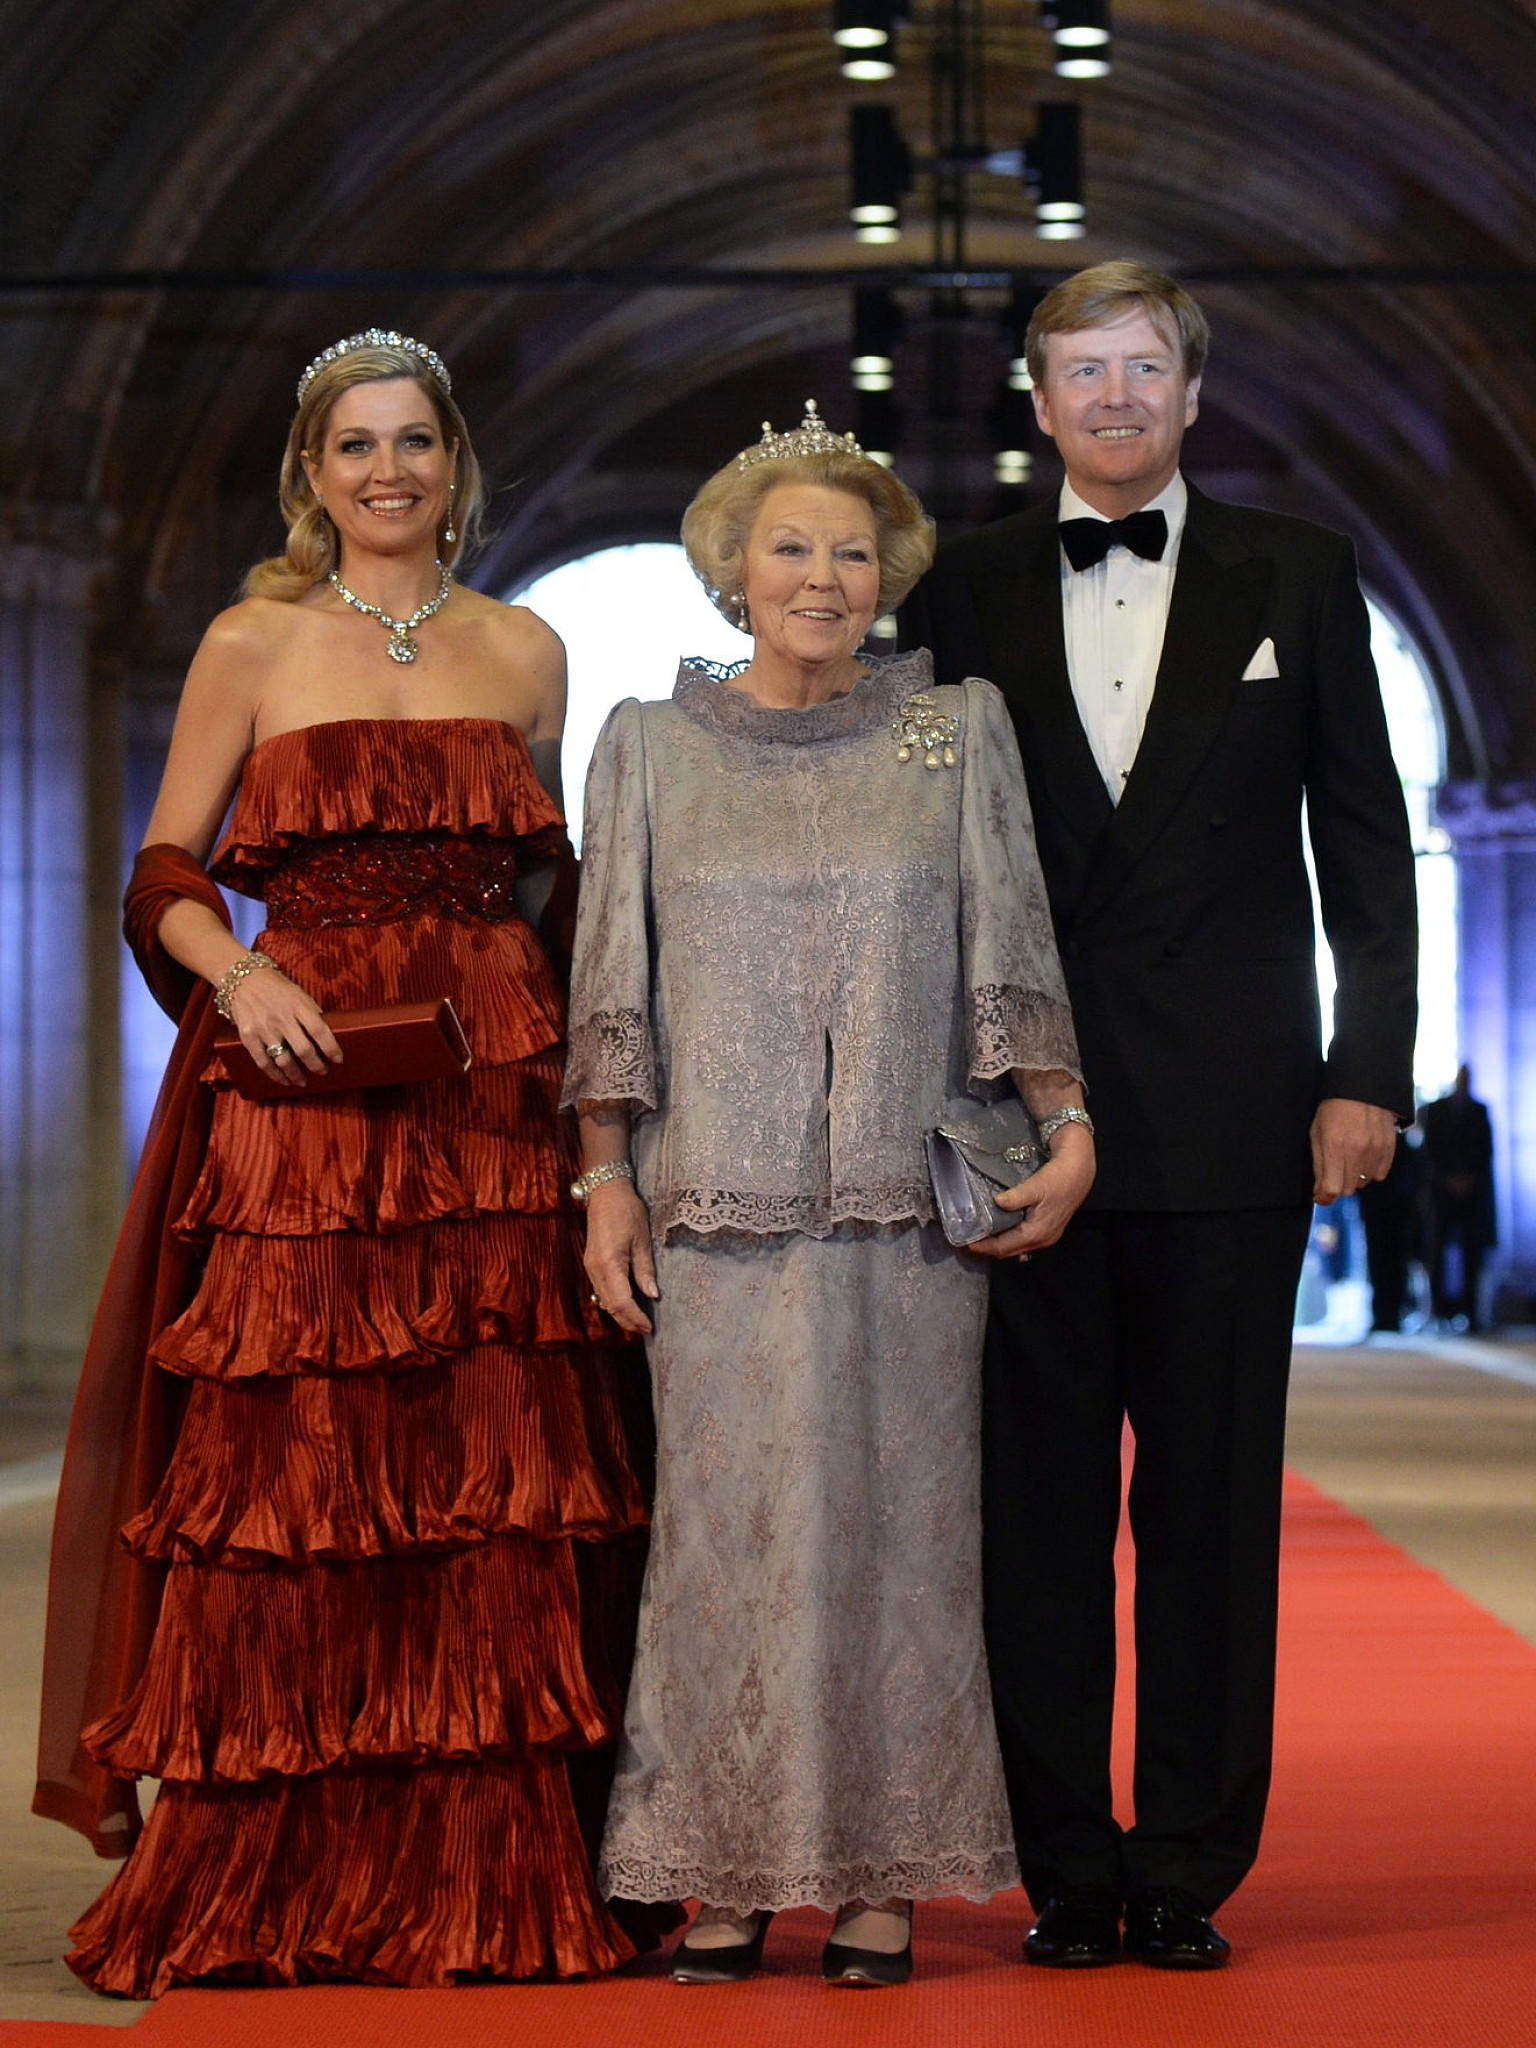 VIP Inthronisierung Abdankung Königin Beatrix